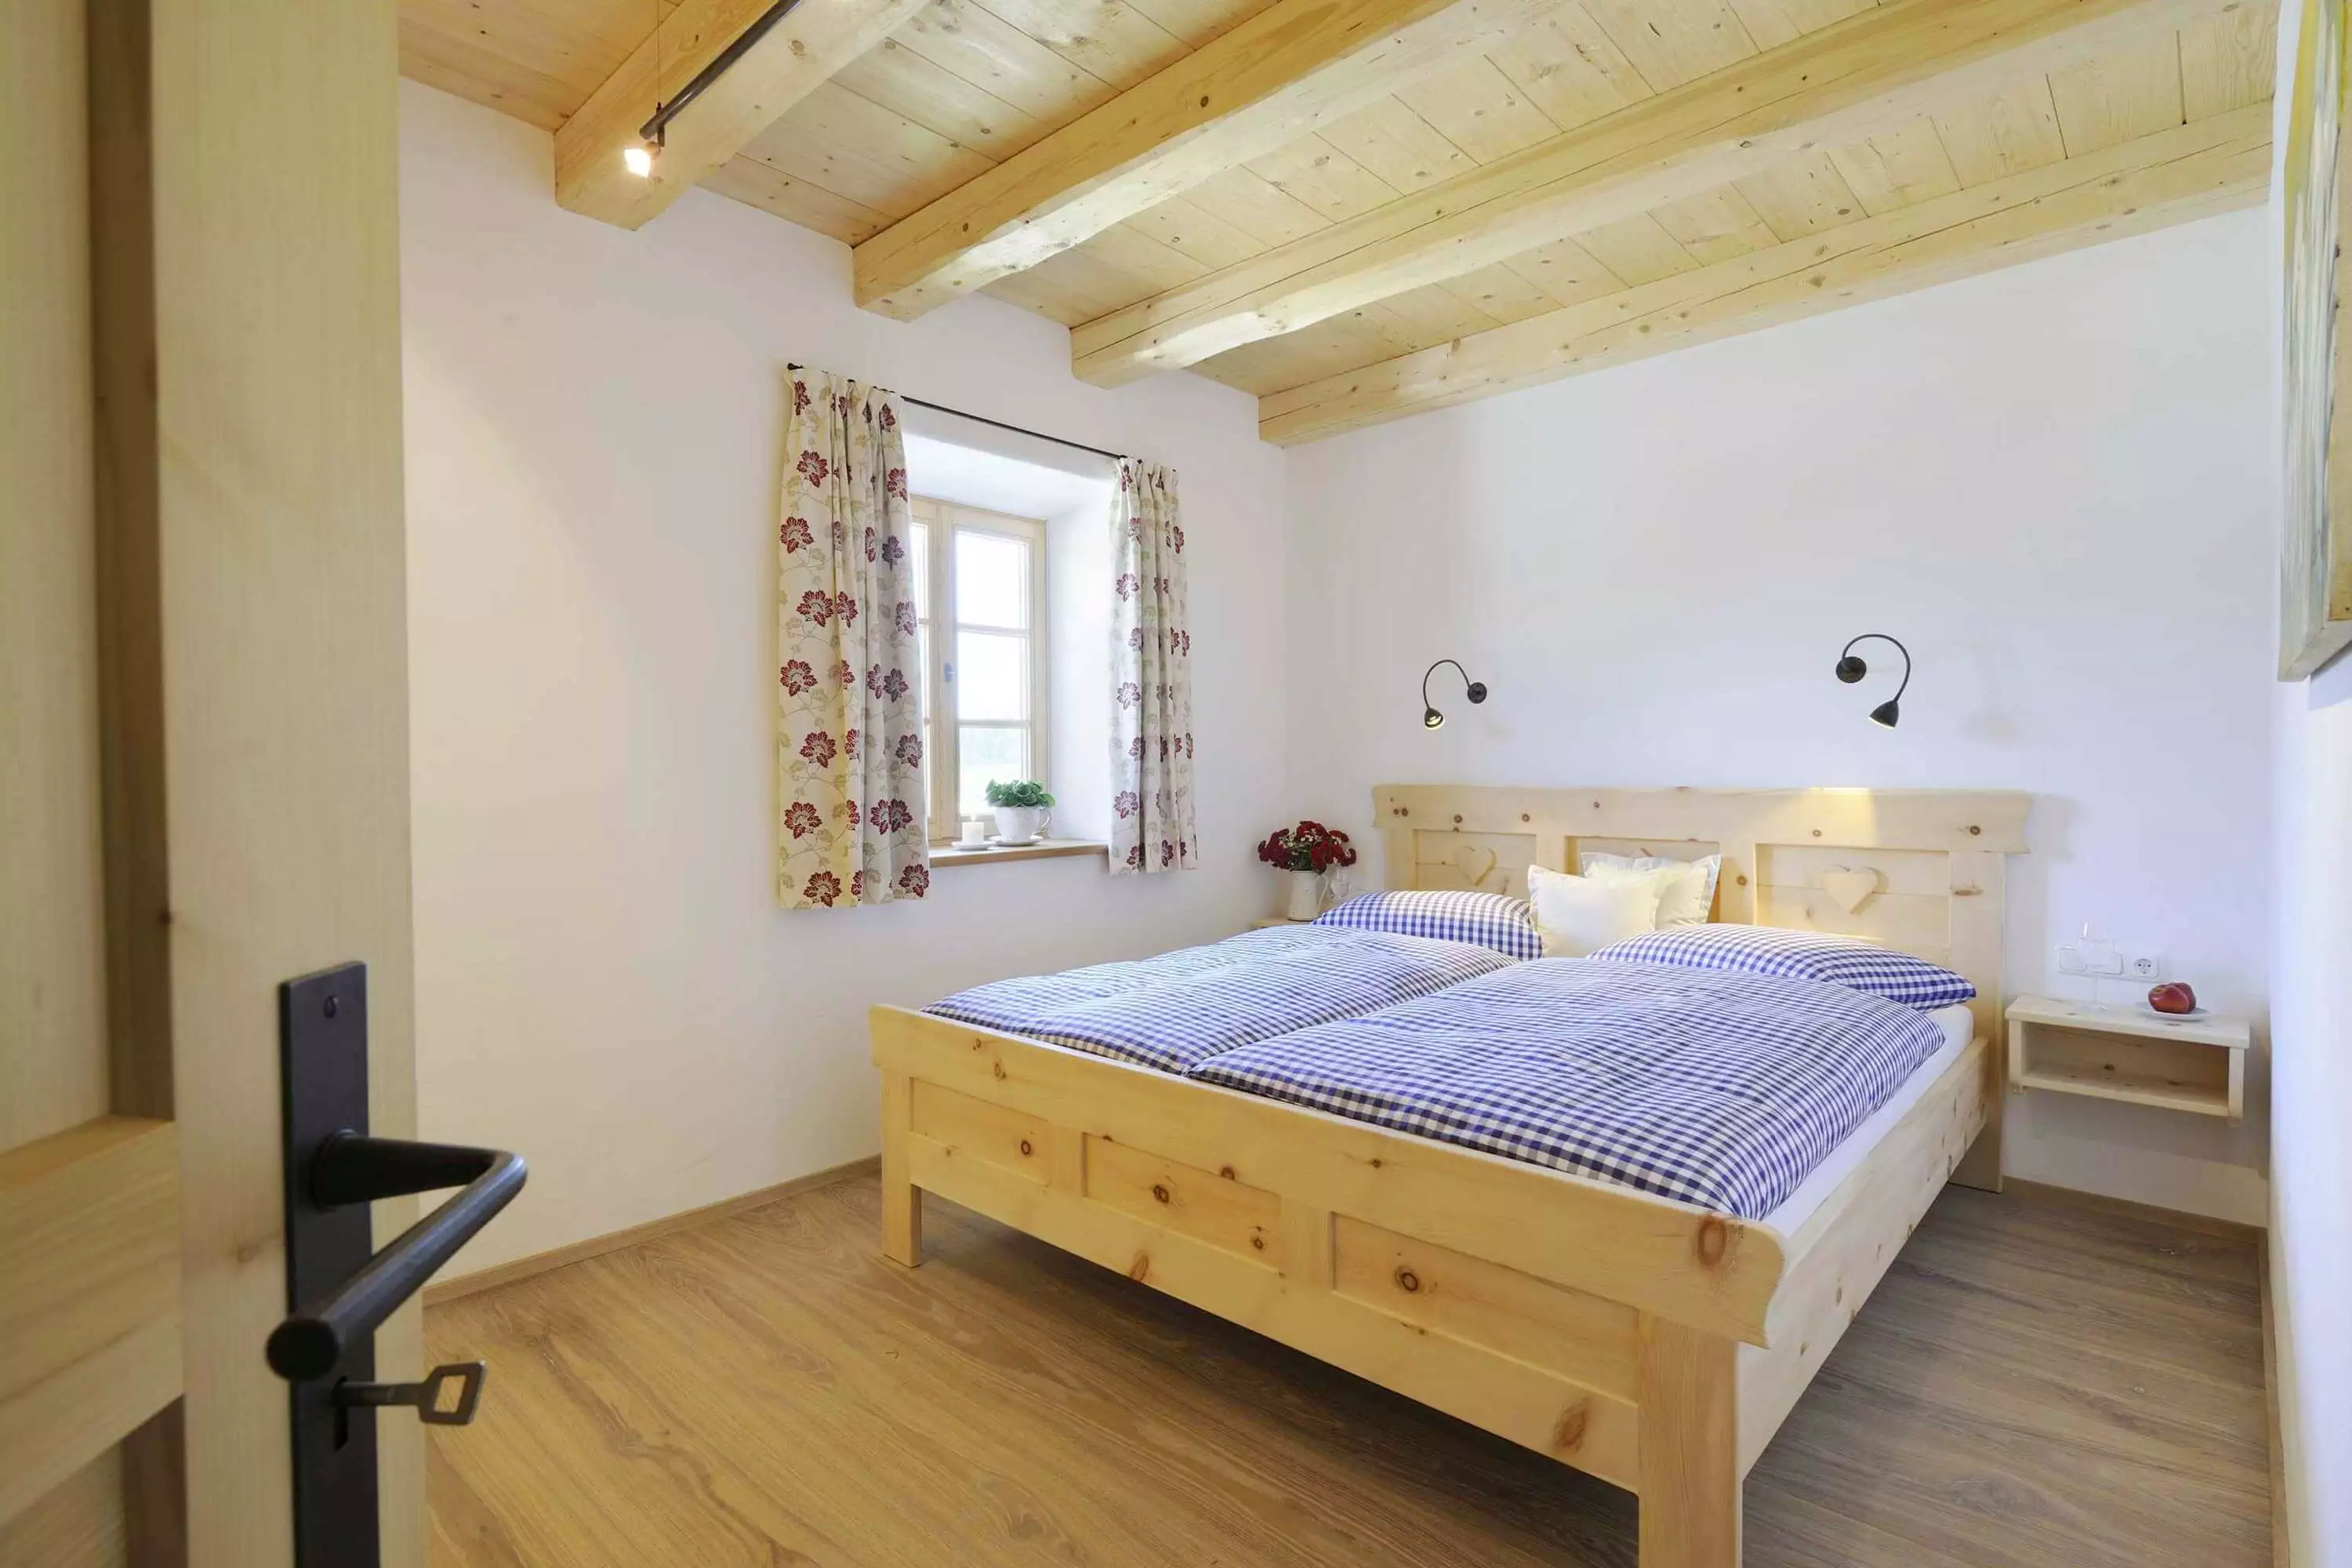 Betten in Überlänge Zirbelkiefernholz Regendusche hochwertige Ausstattung